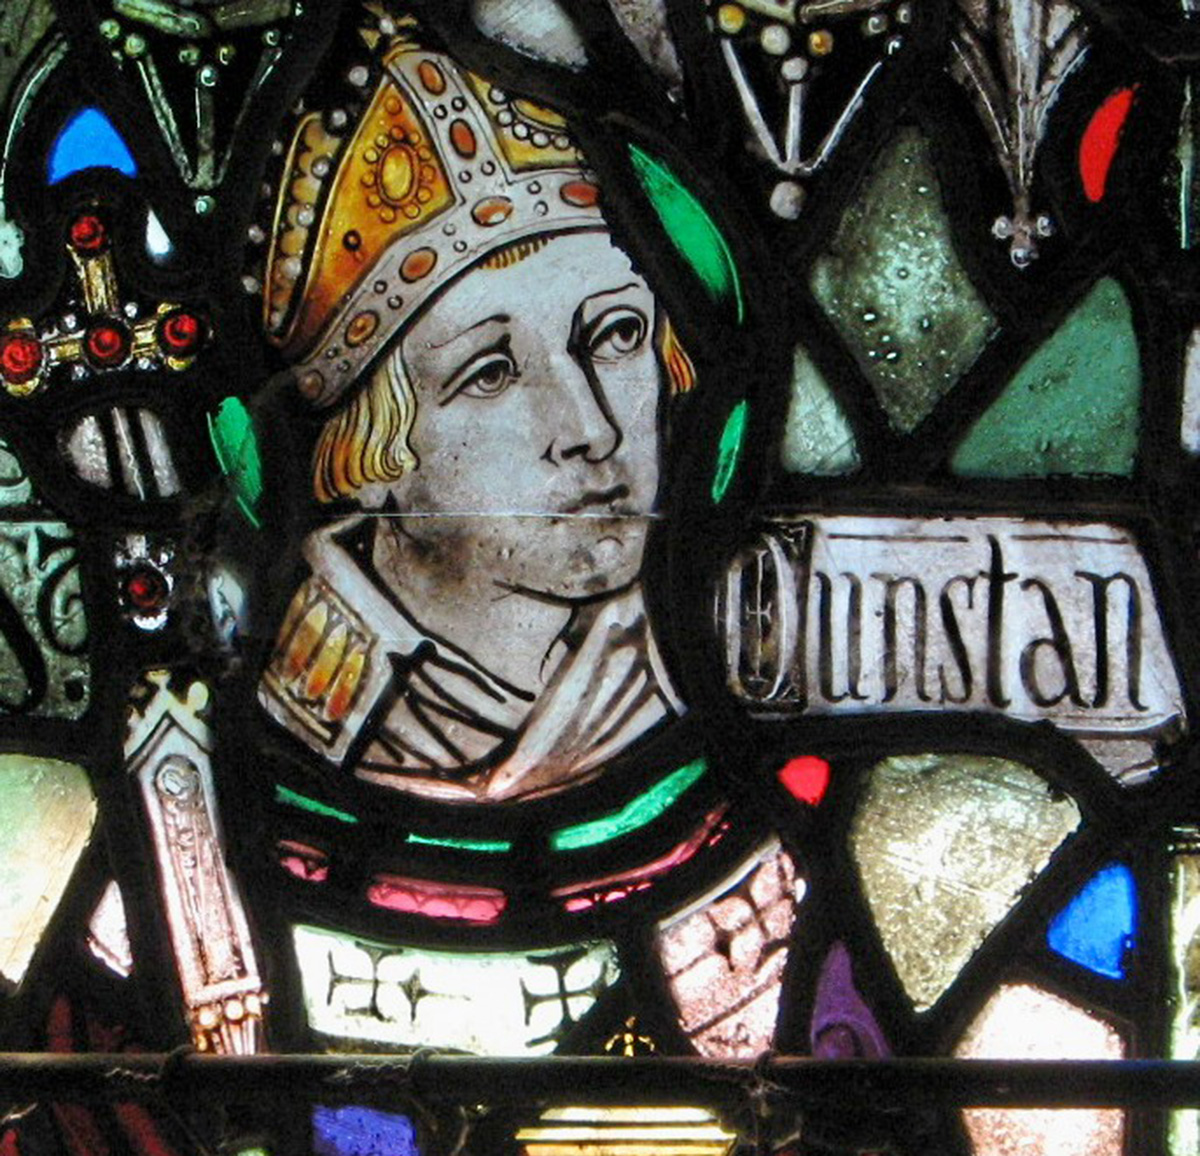 Who was St. Dunstan?